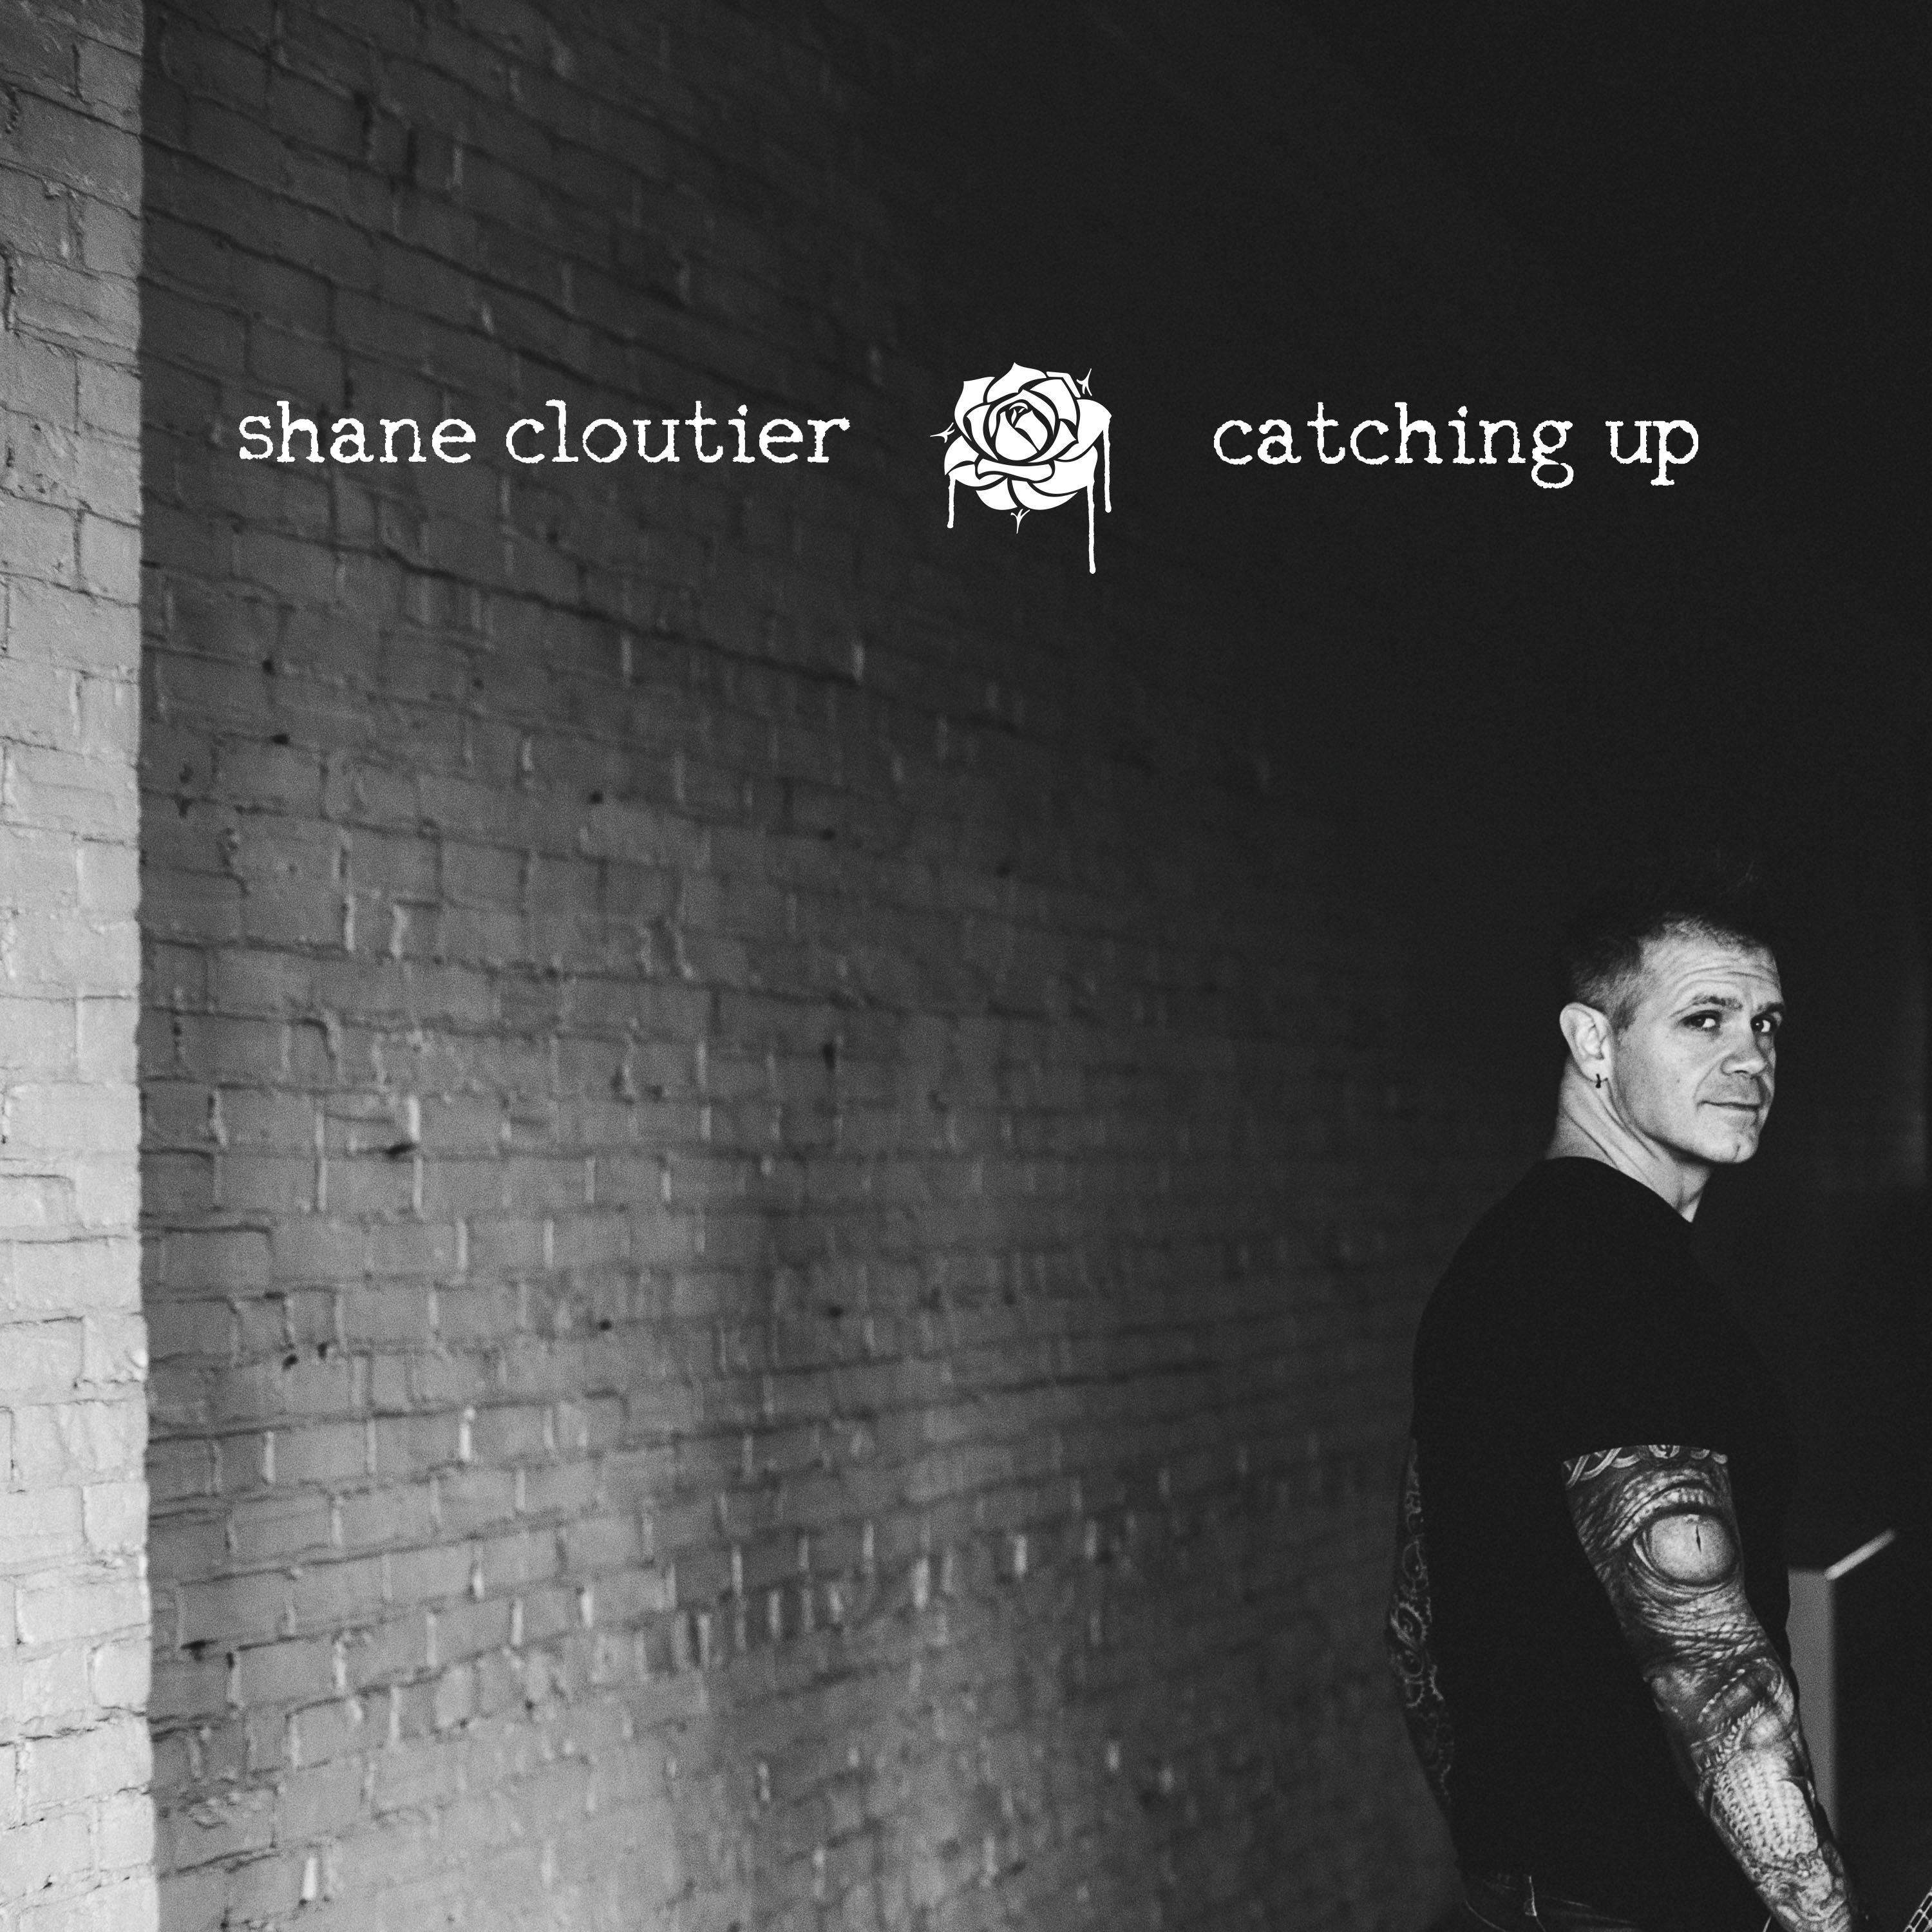 Shane Cloutier